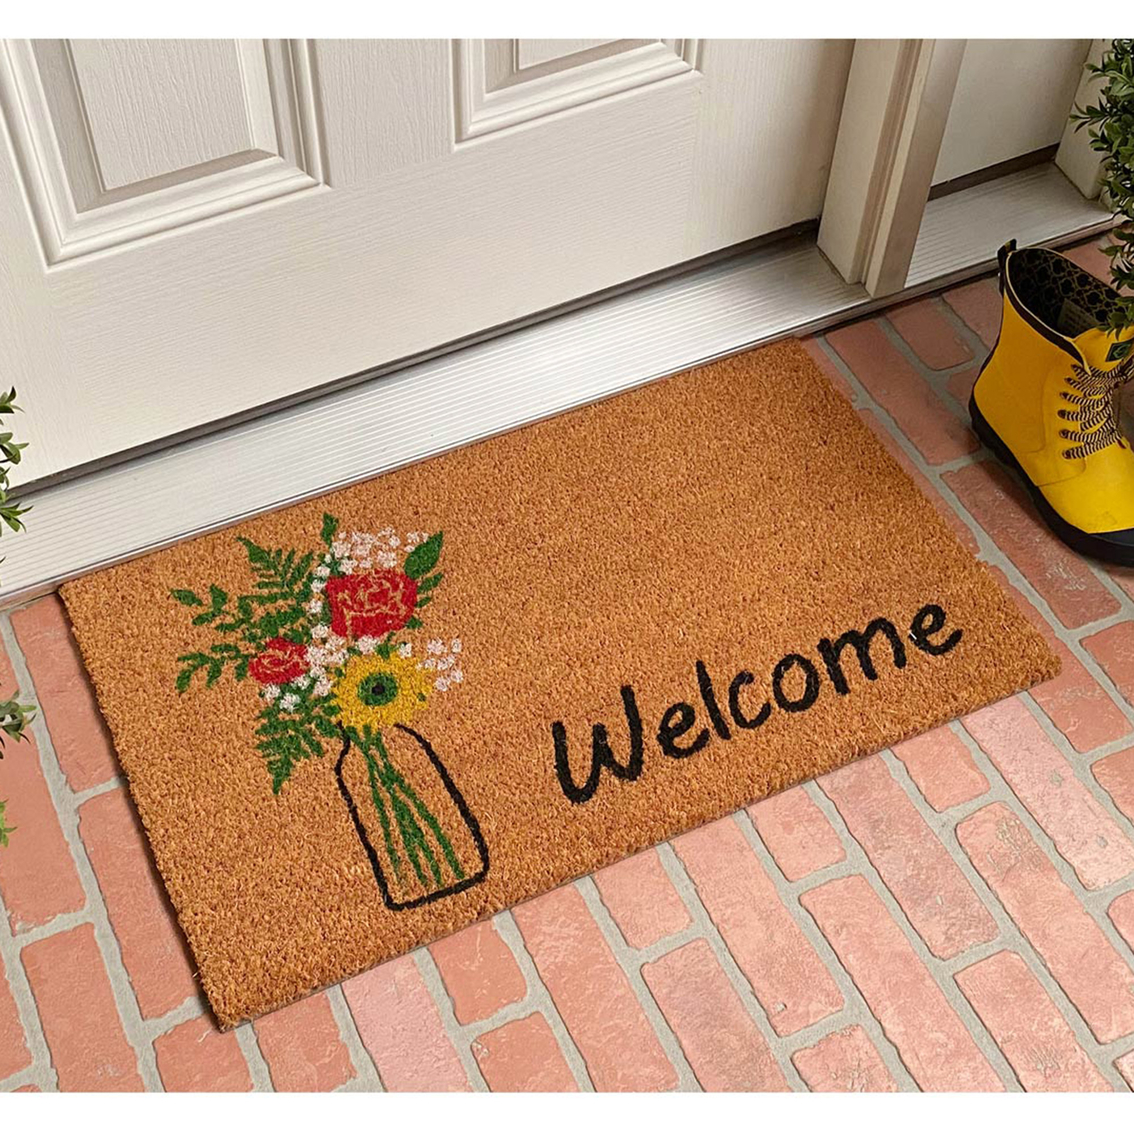 Calloway Mills 17 x 29 in. Summer Bouquet Doormat - Image 2 of 6